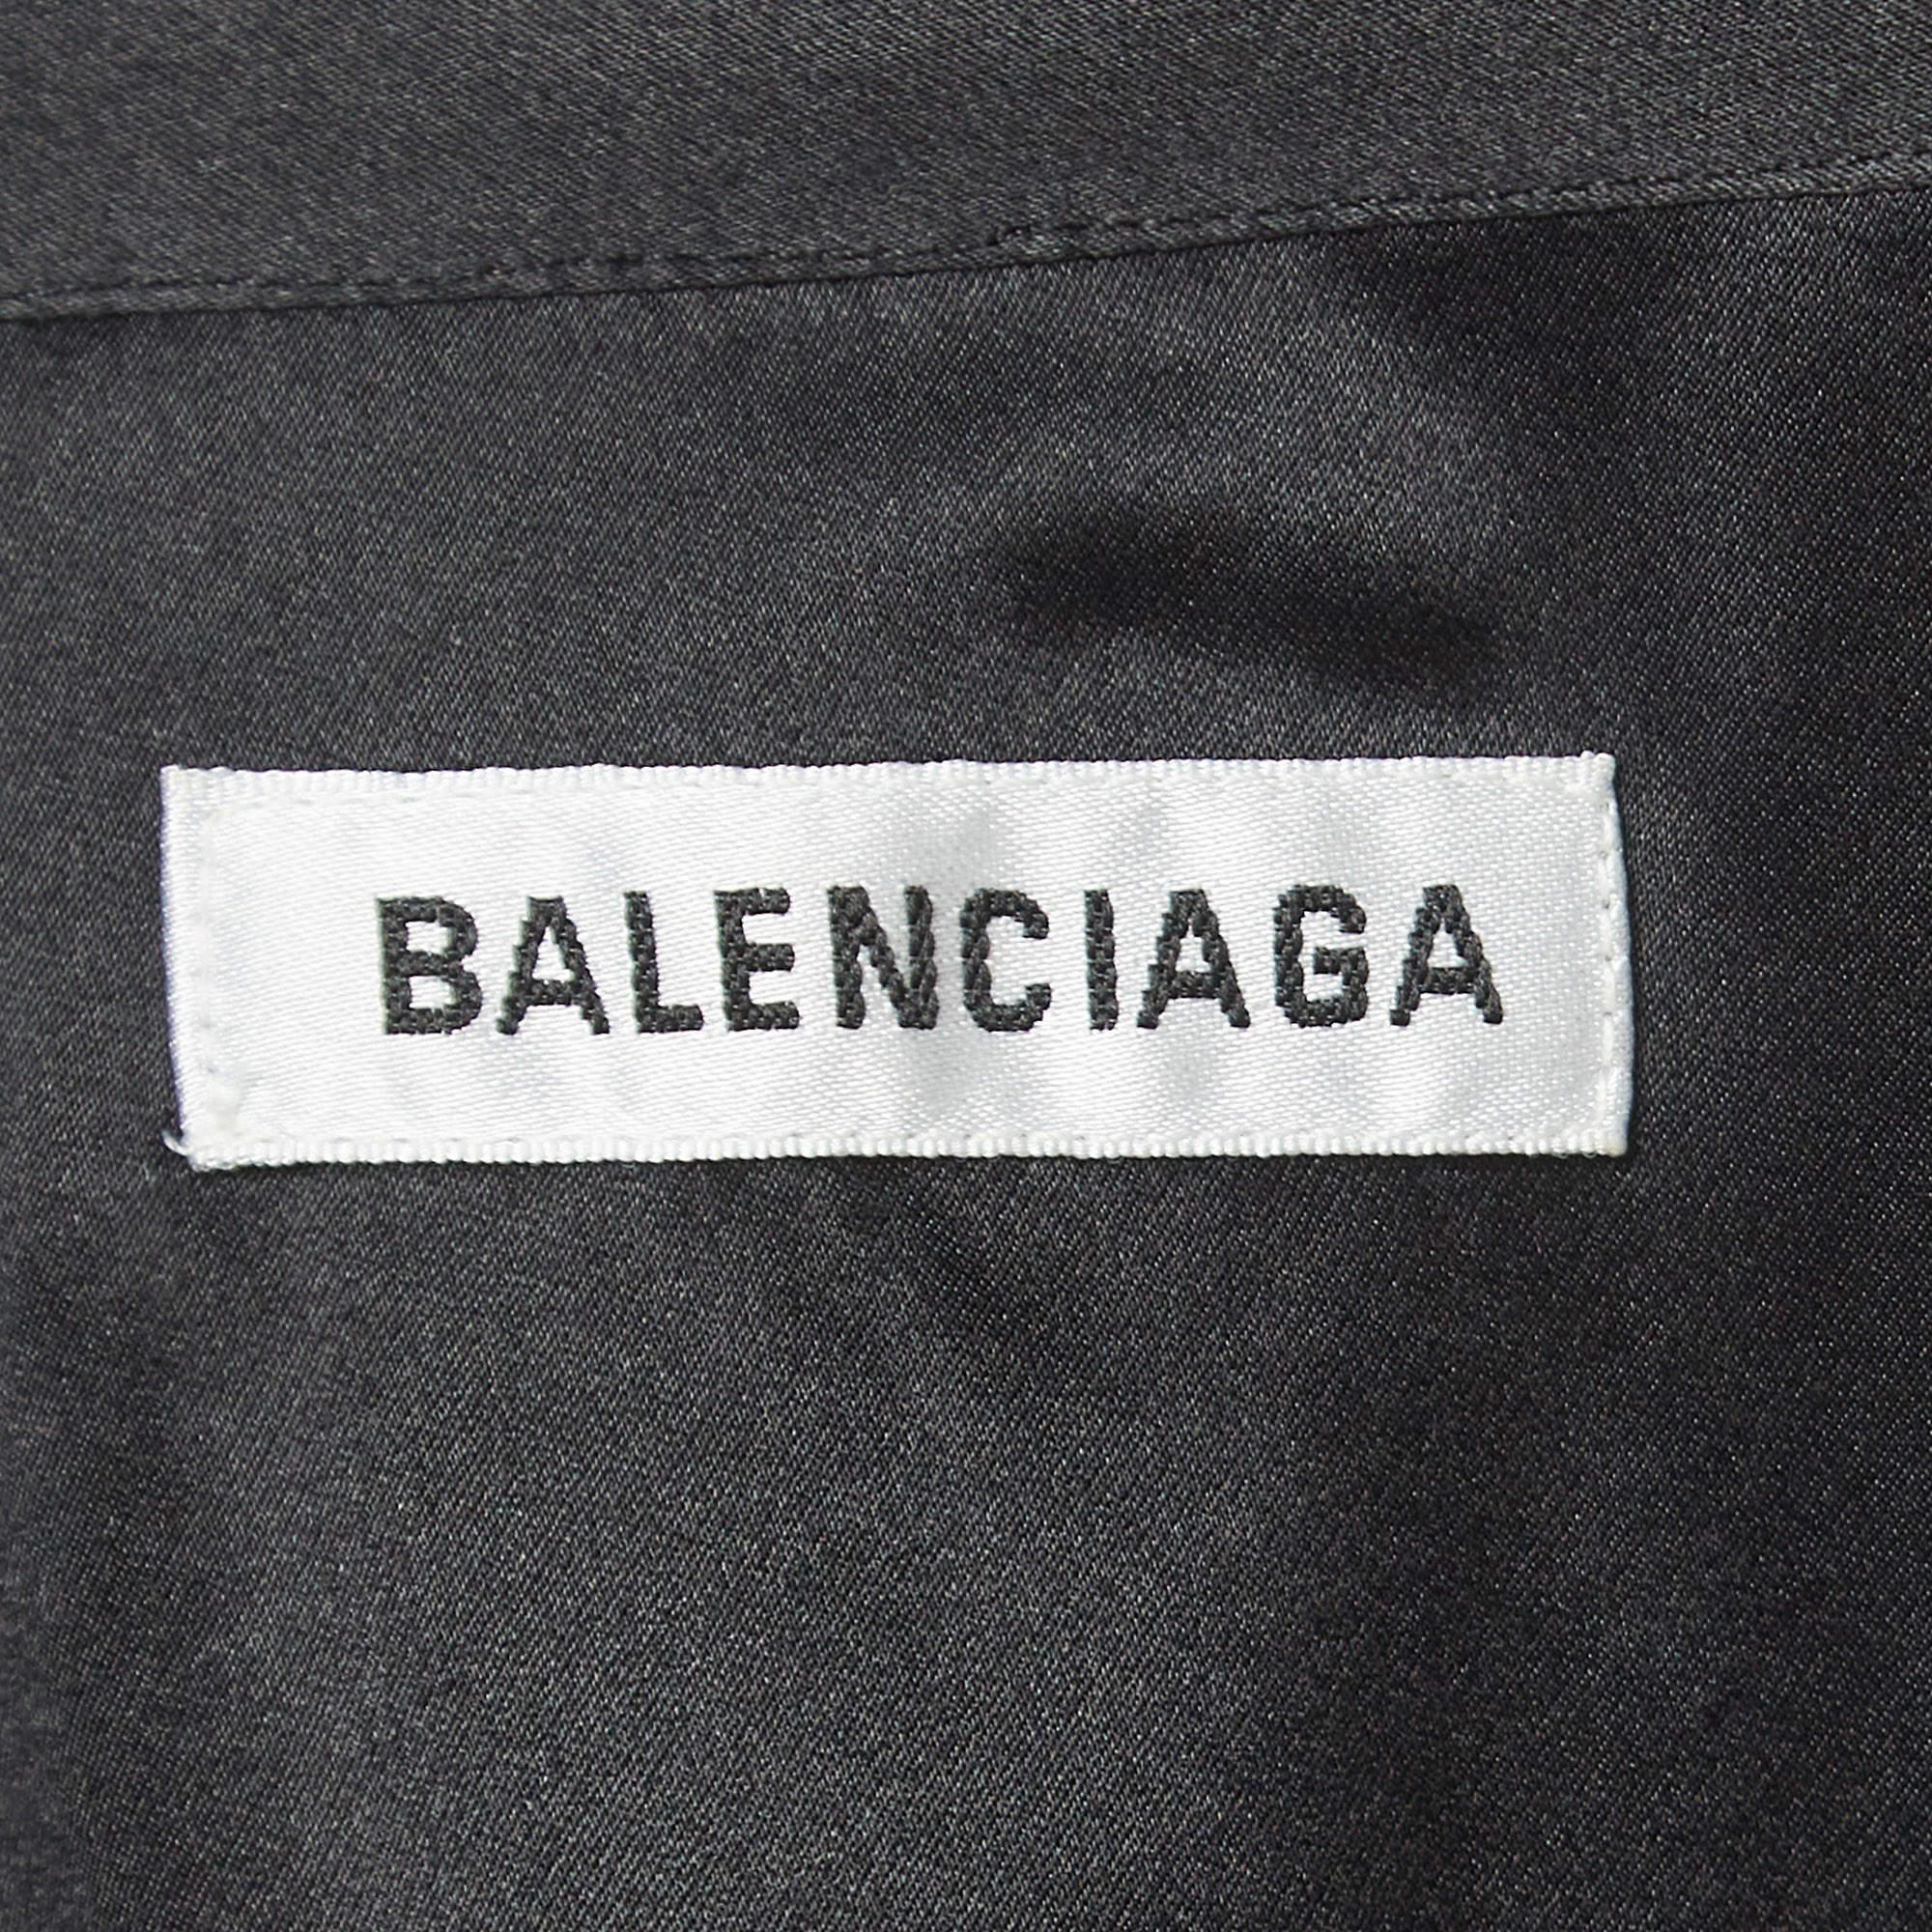 Balenciaga Black Satin Silk Tie-Up Neck Button Front Shirt S For Sale 3